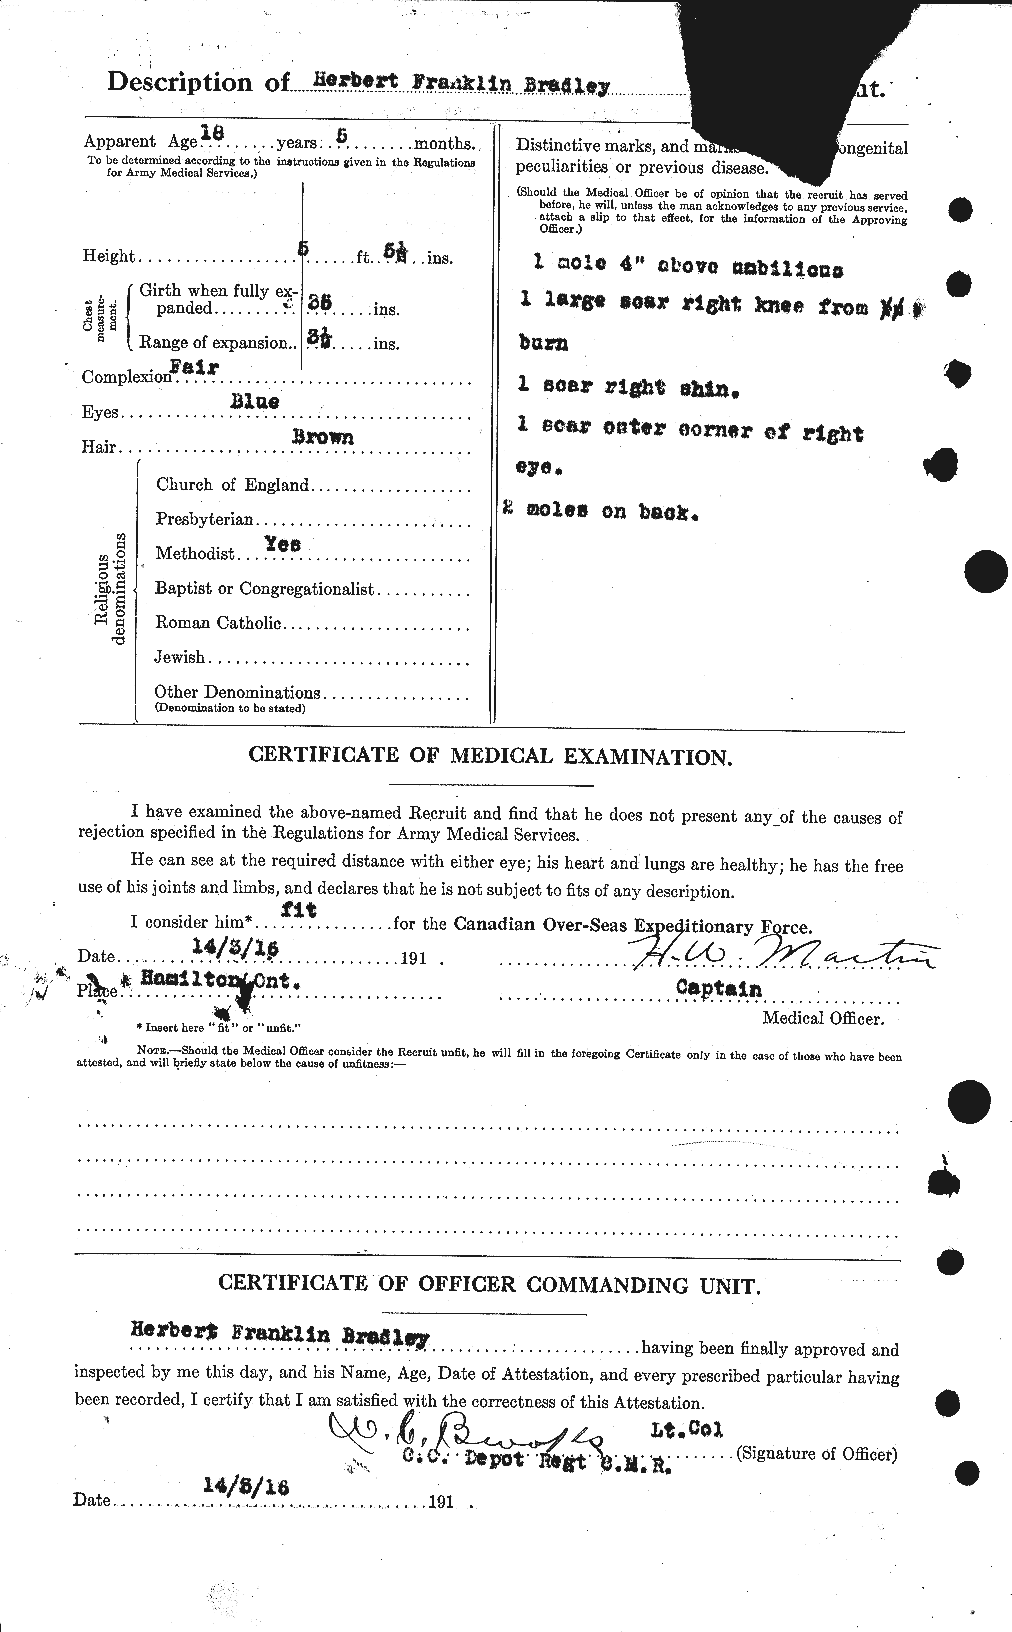 Dossiers du Personnel de la Première Guerre mondiale - CEC 258436b